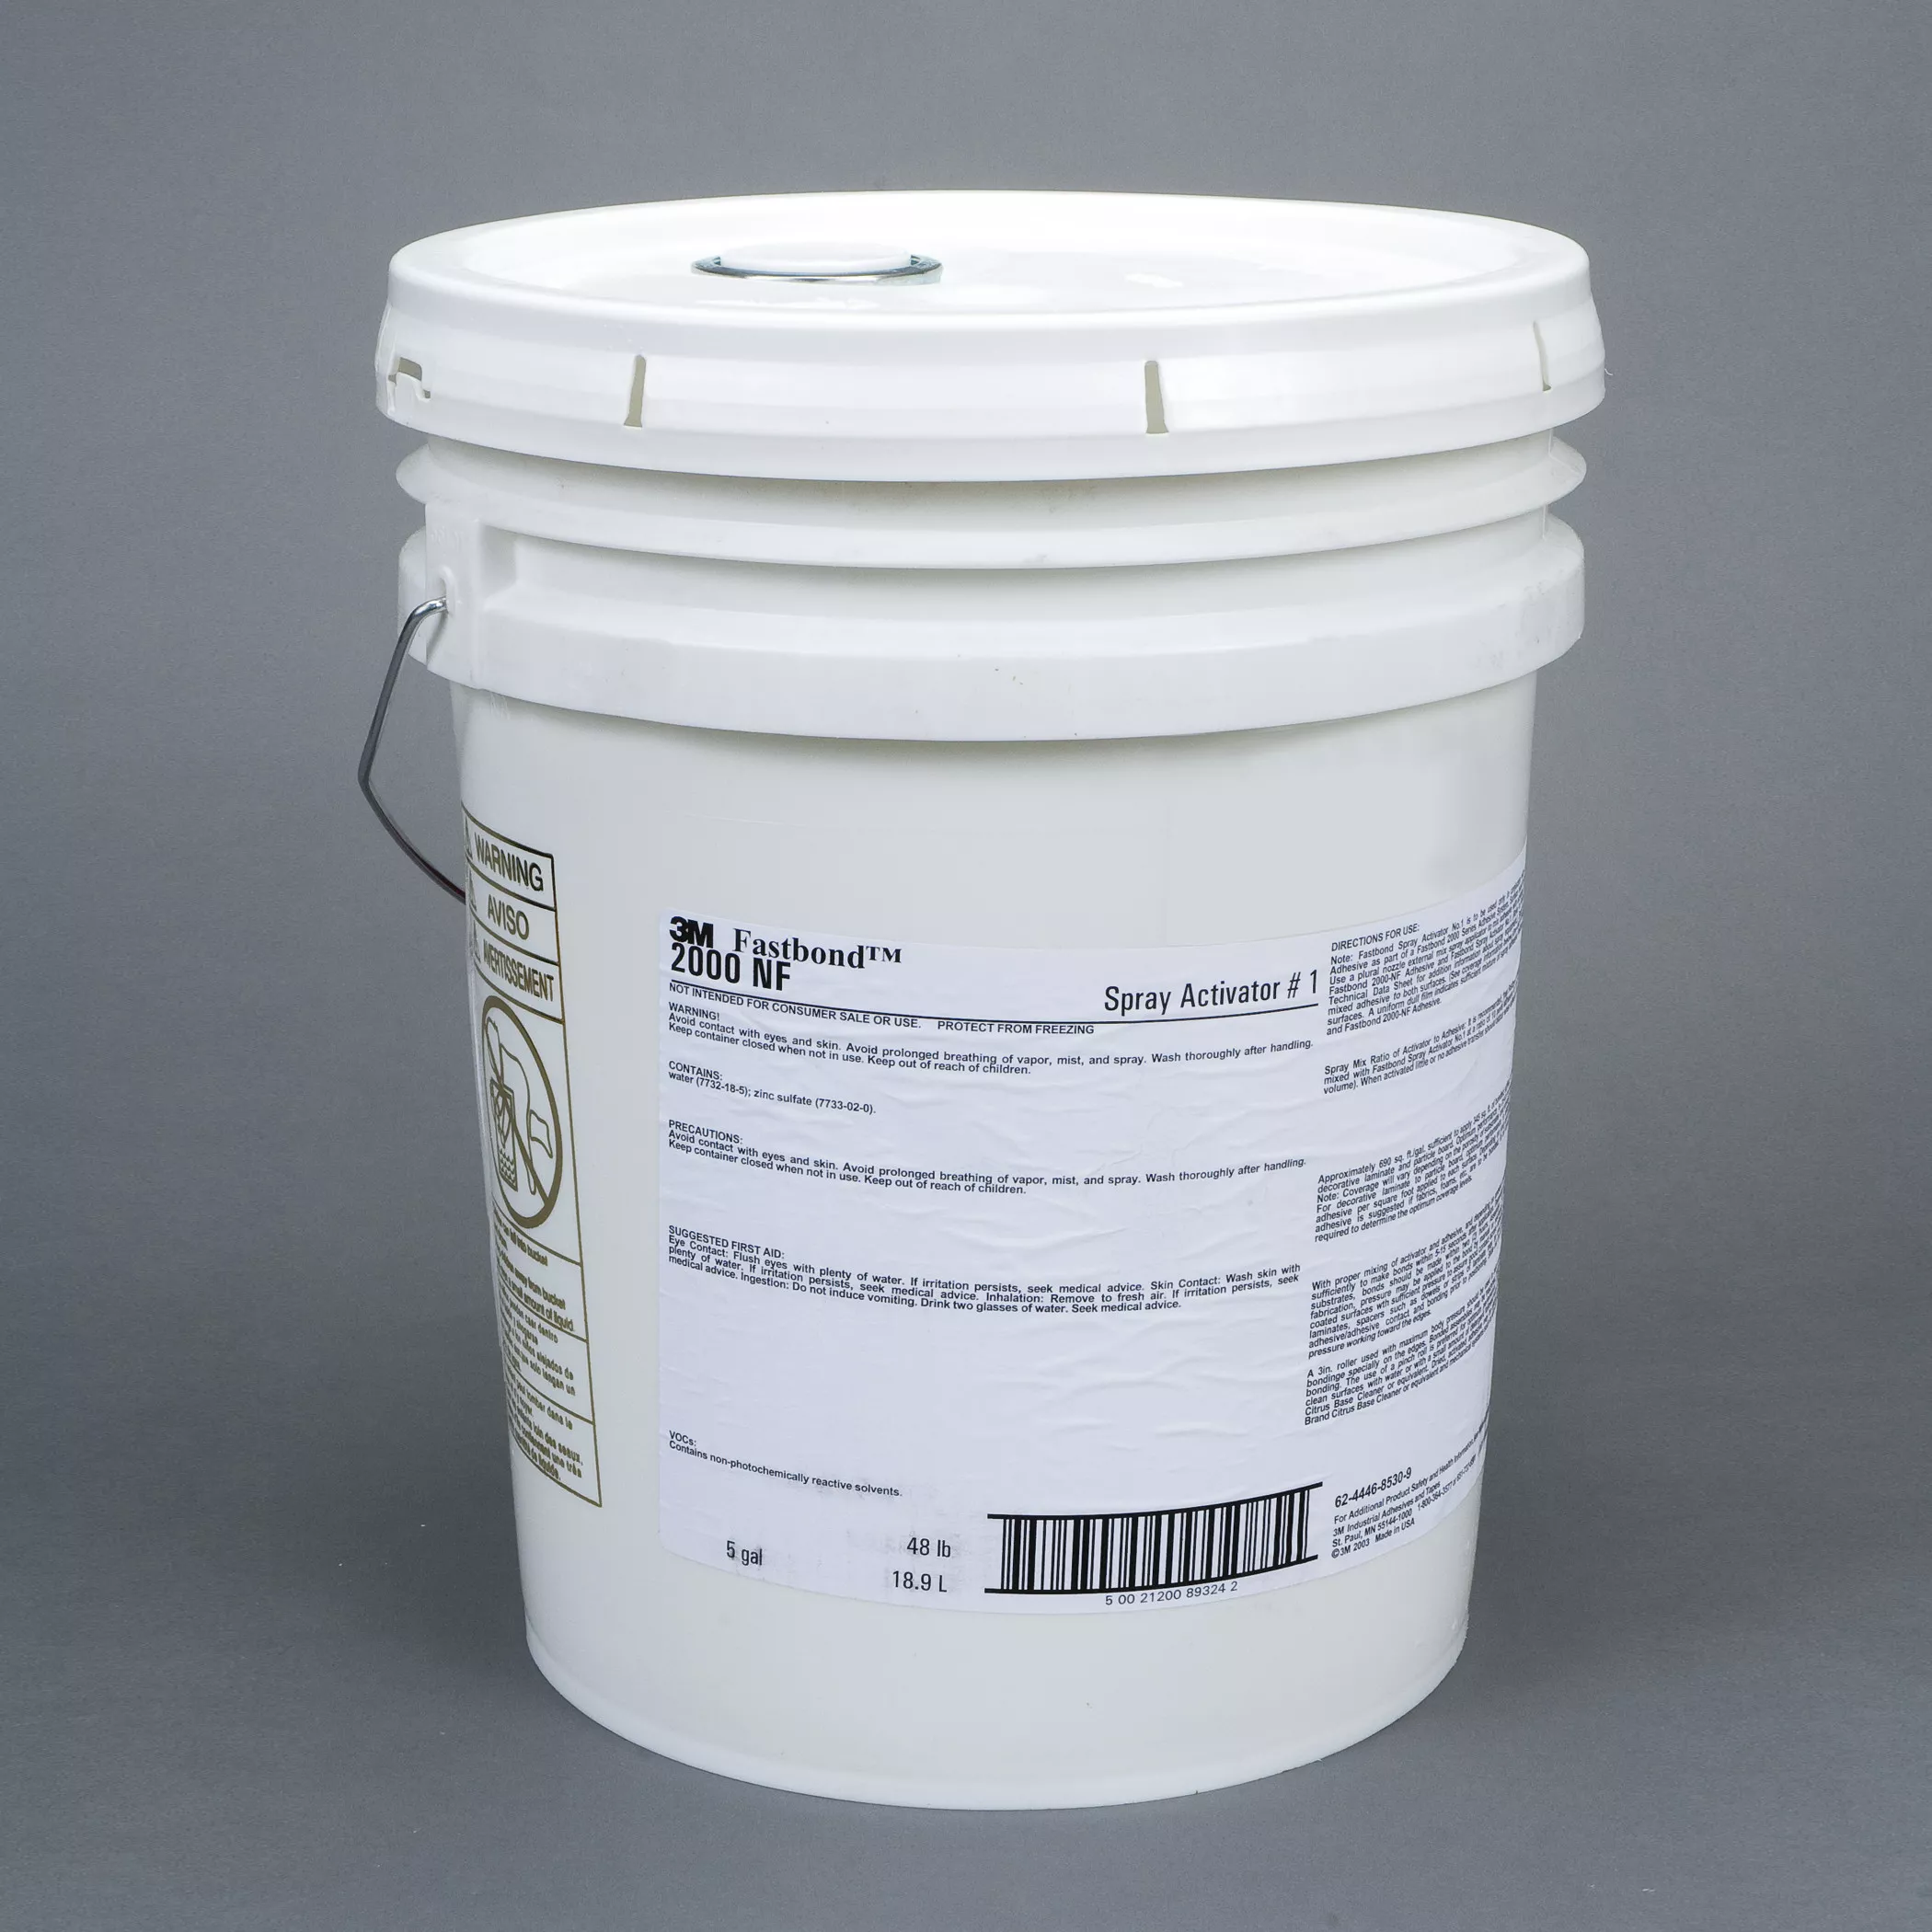 3M™ Fastbond™ Spray Activator 1, 5 Gallon Pour Spout (Pail), 1 Can/Drum